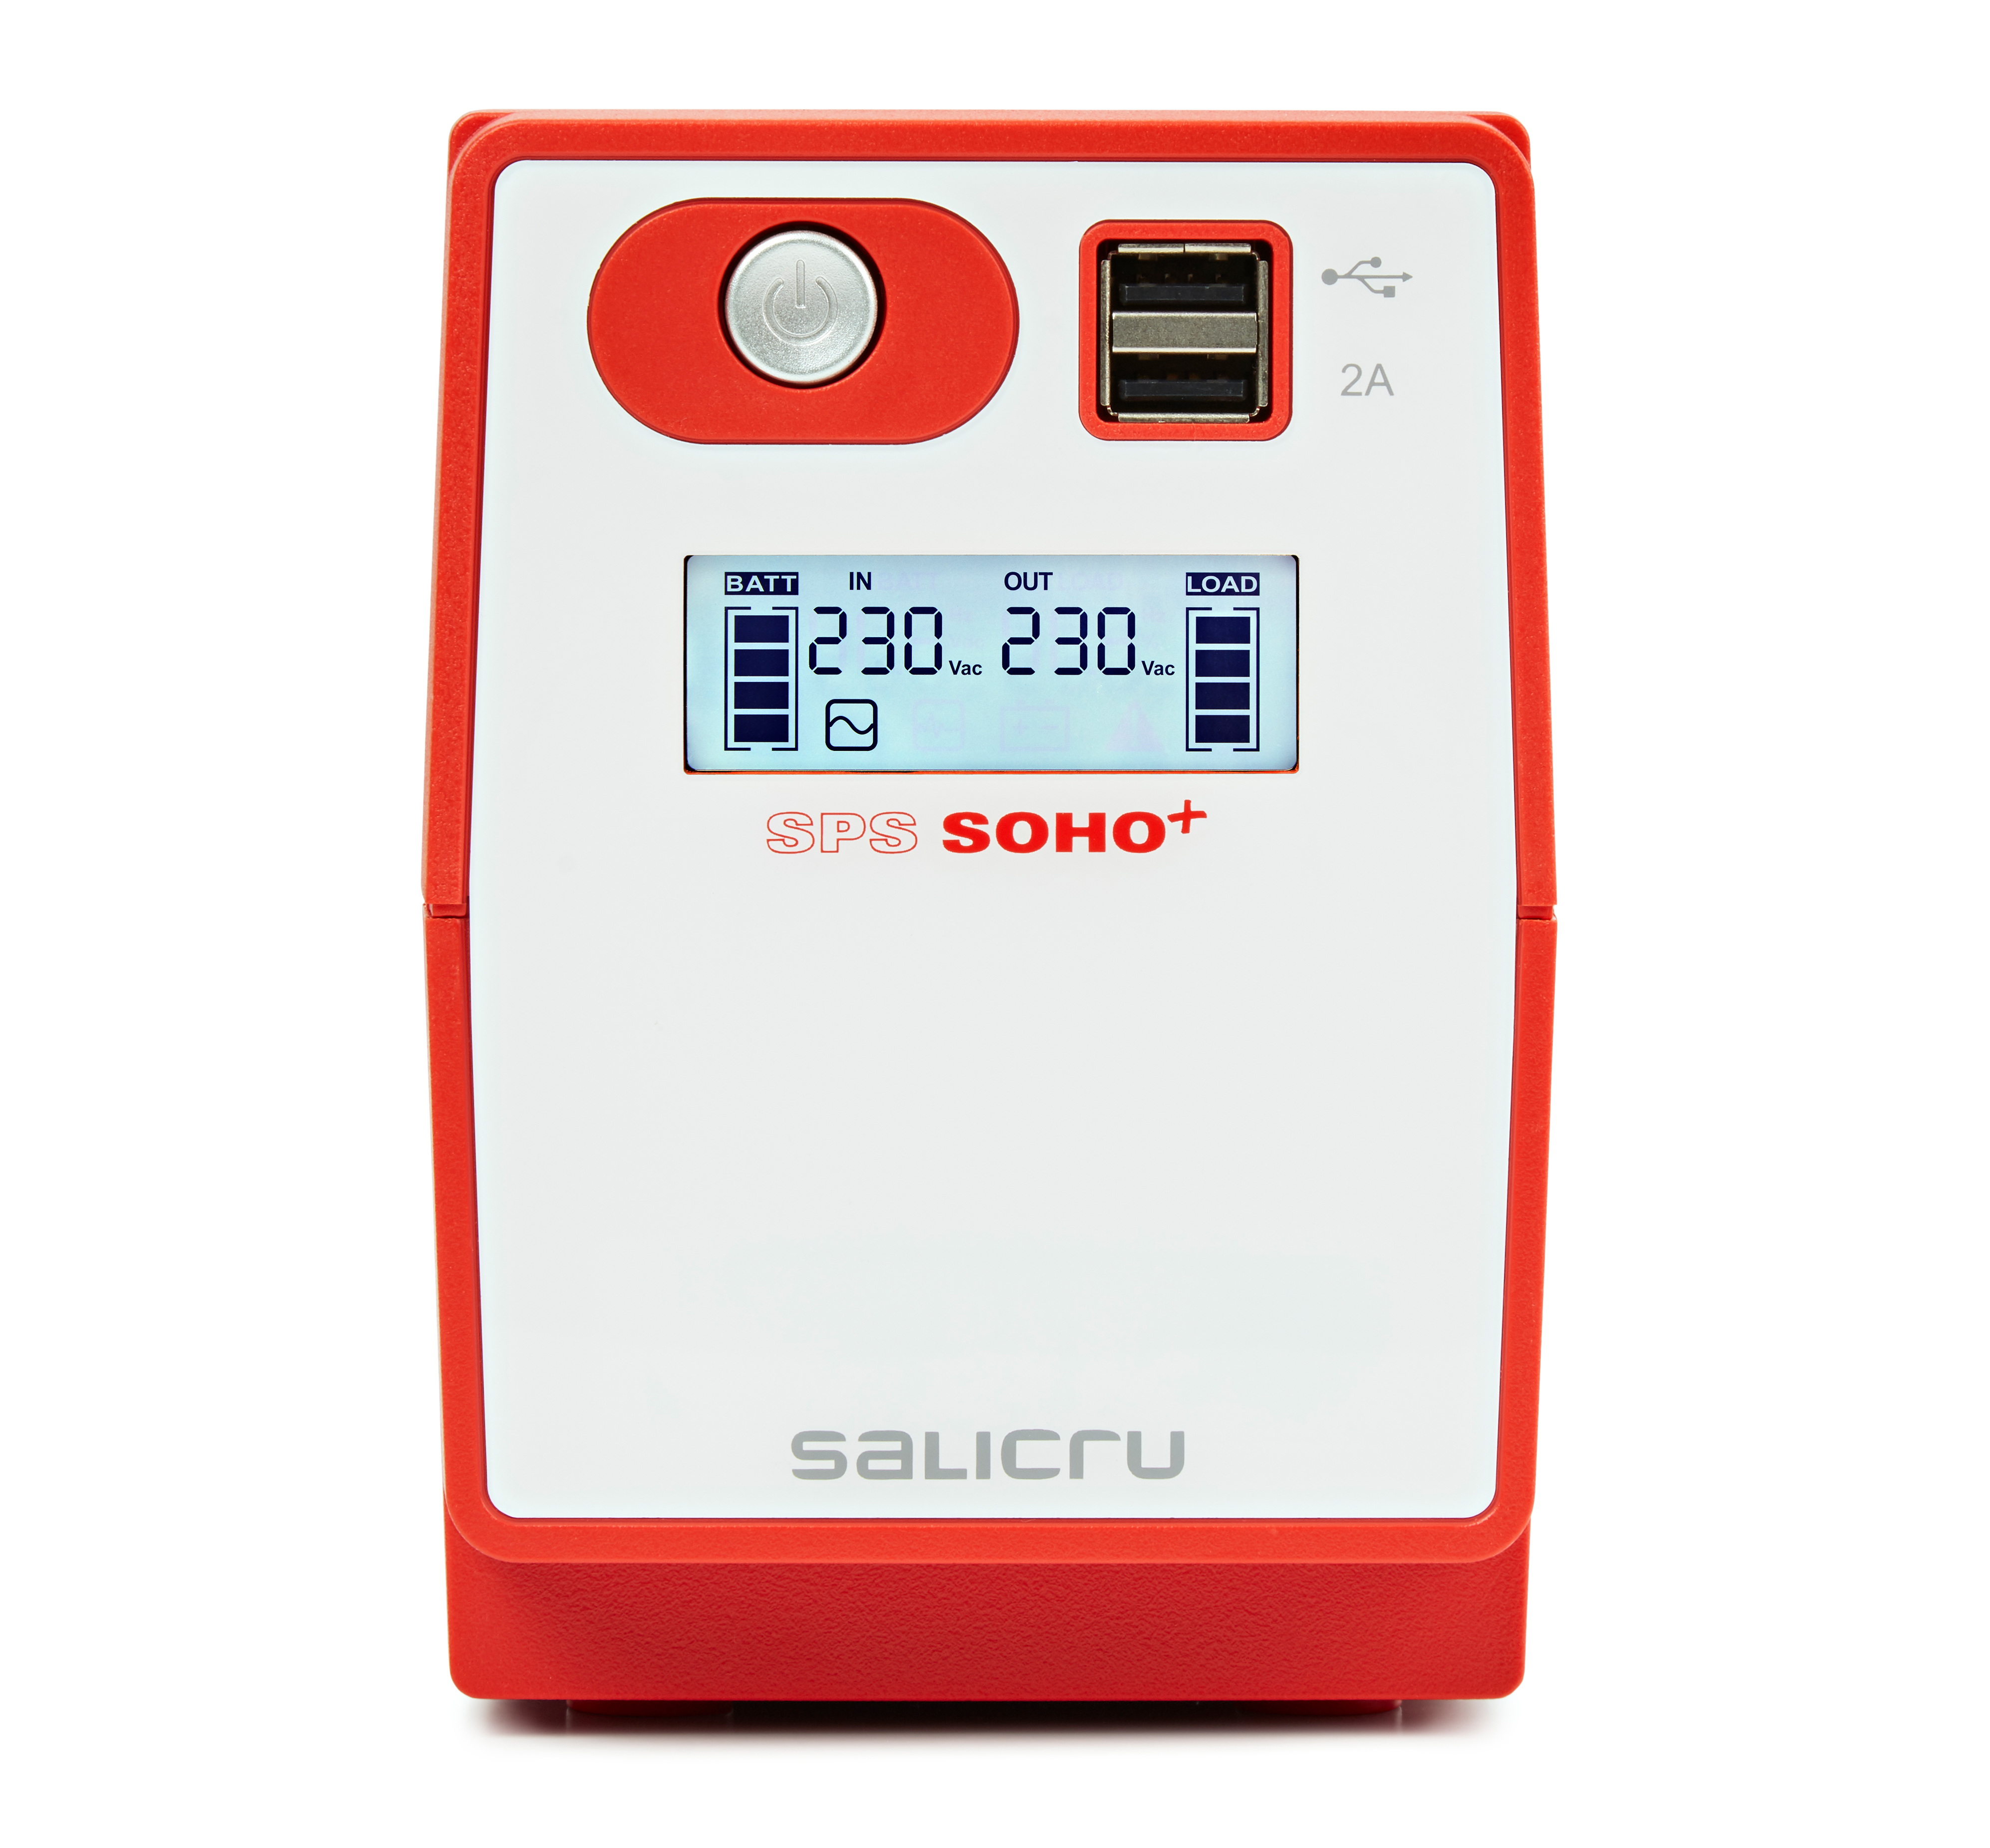 Salicru SPS SOHO+ 850VA SAI